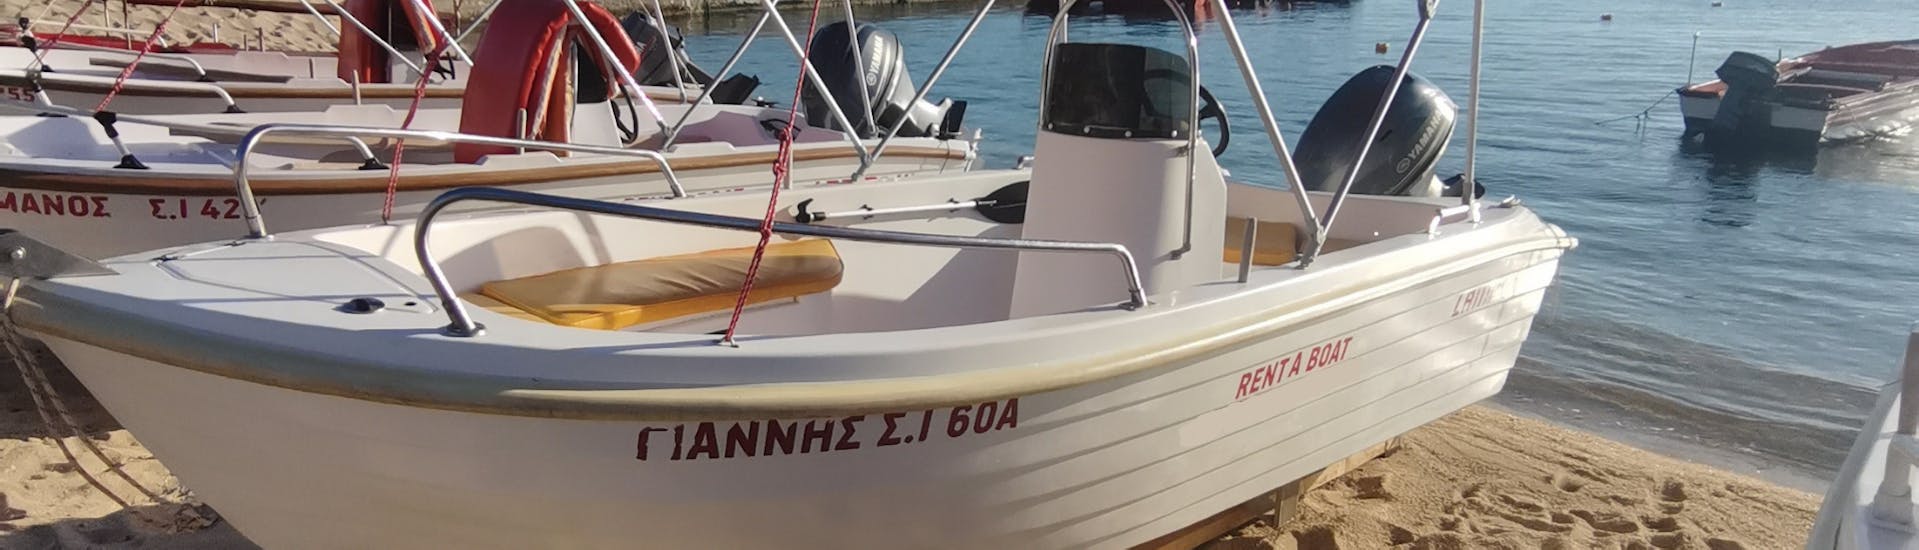 La barca è sulla spiaggia durante il noleggio barca a Ouranoupoli (fino a 5 persone) senza patente con Rent a Boat Lampou.